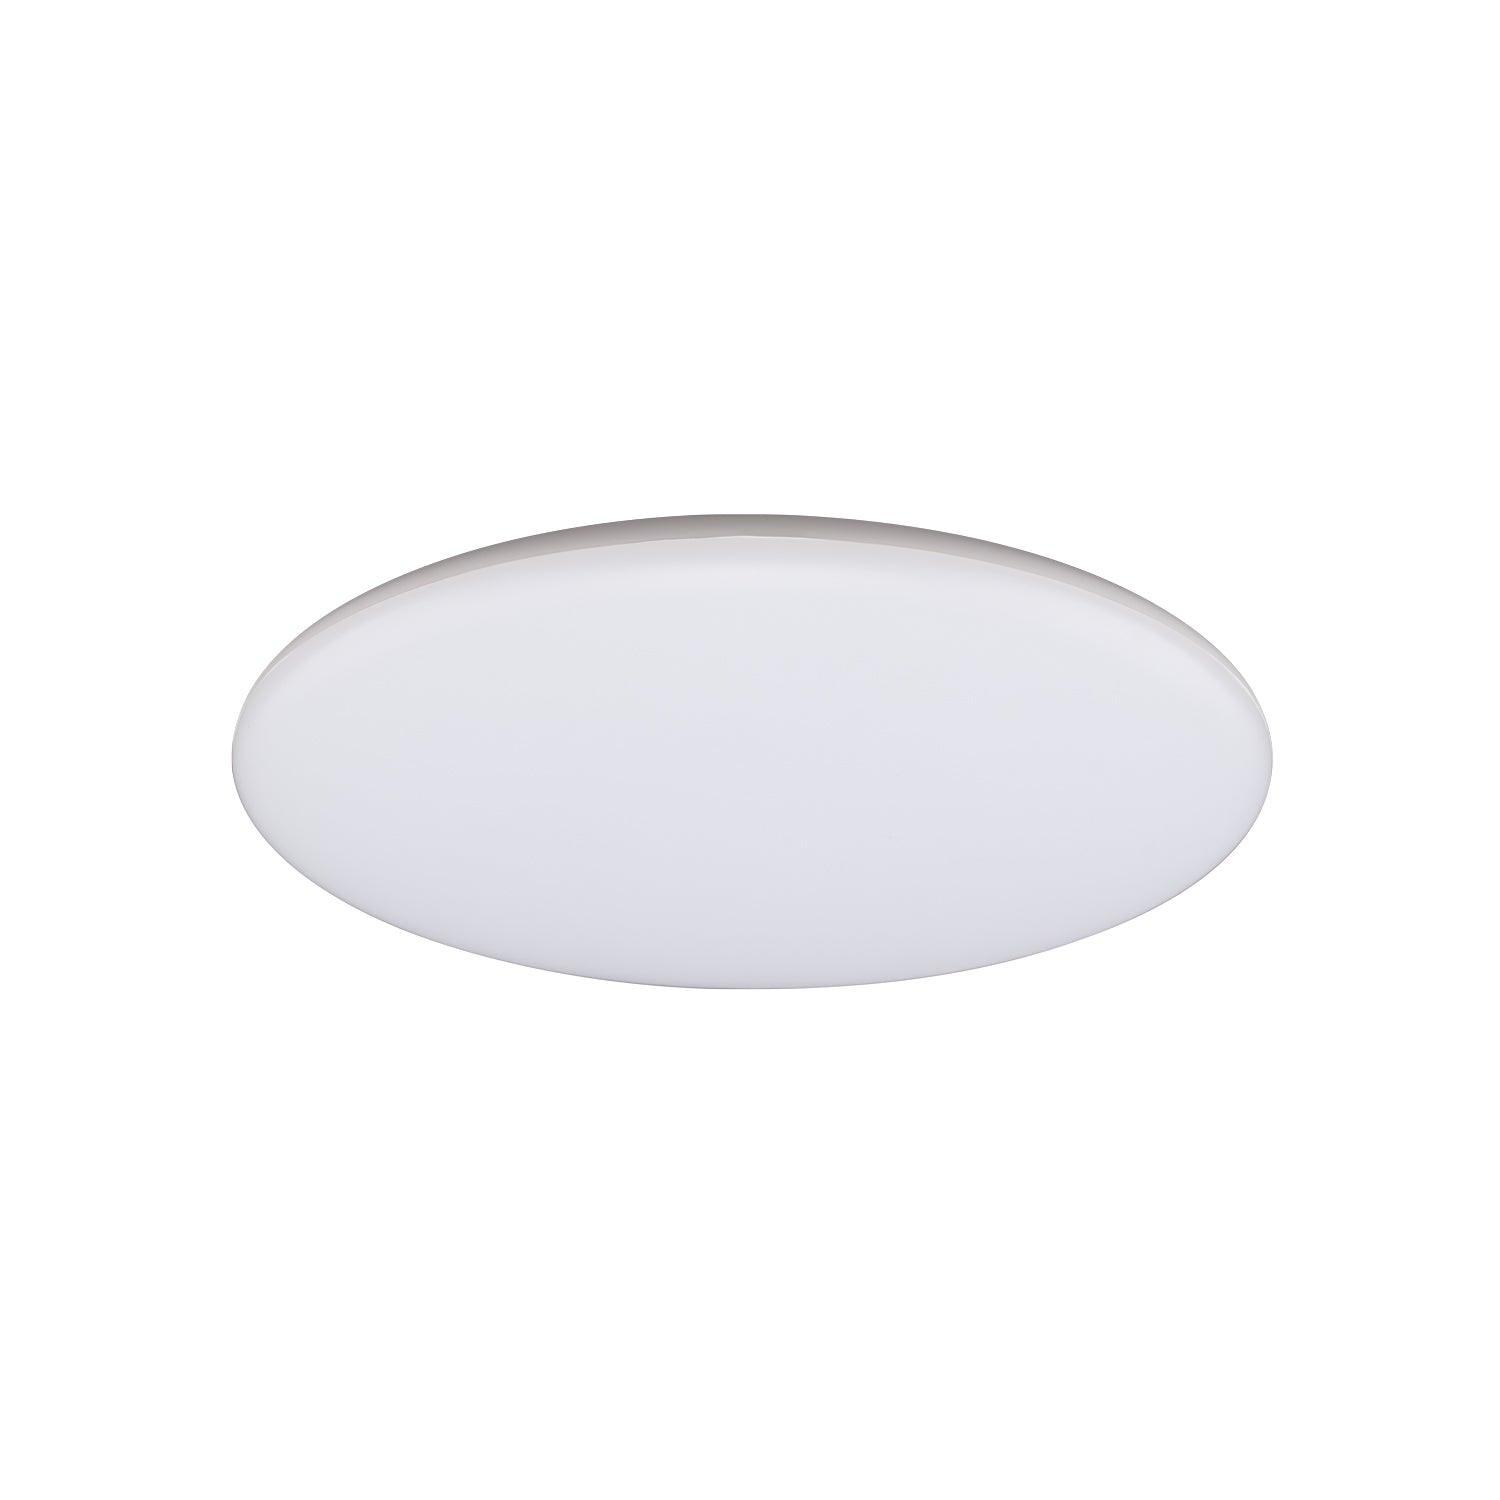 Domus Lighting Oyster Lights WHITE / 300mm Mondo Round Led Ceiling Light 20873